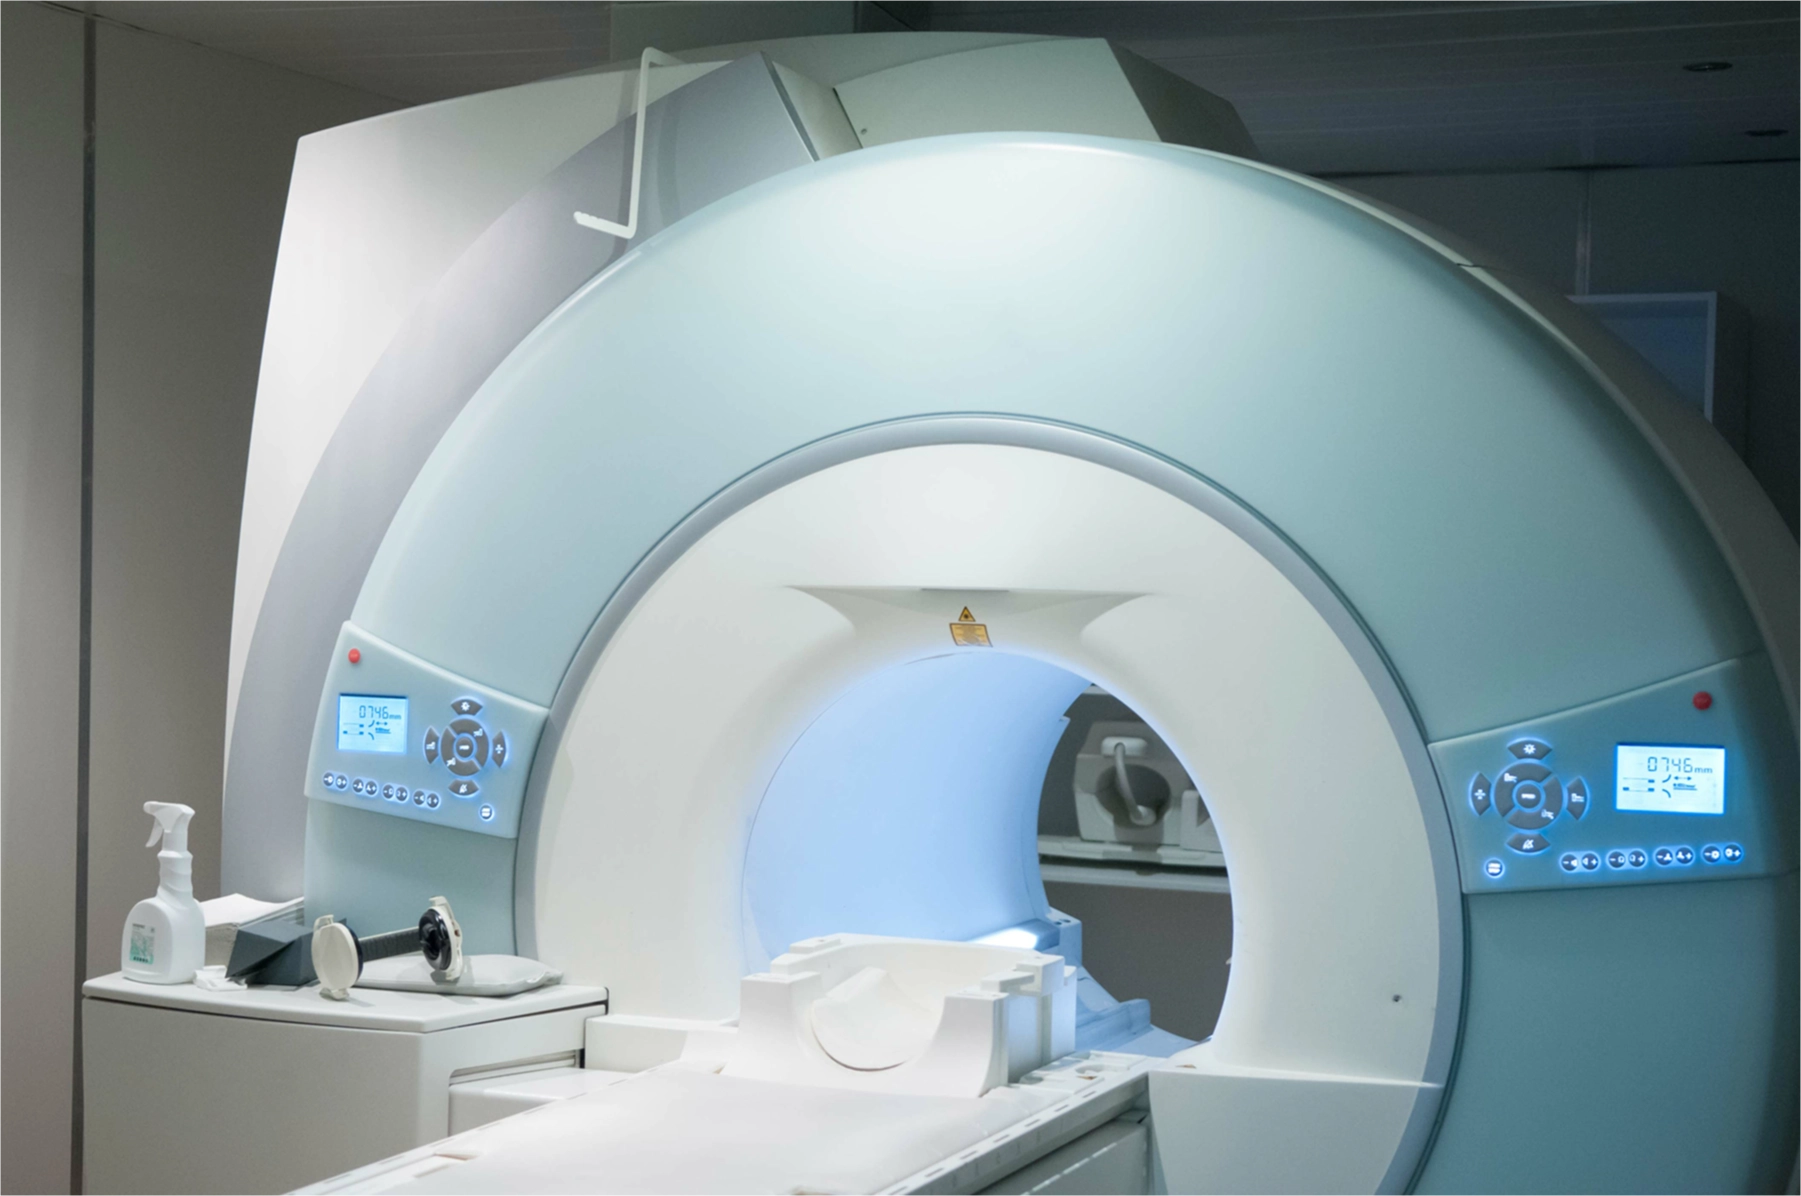 siemens Skyra MRI , CT and mri machine sales and service